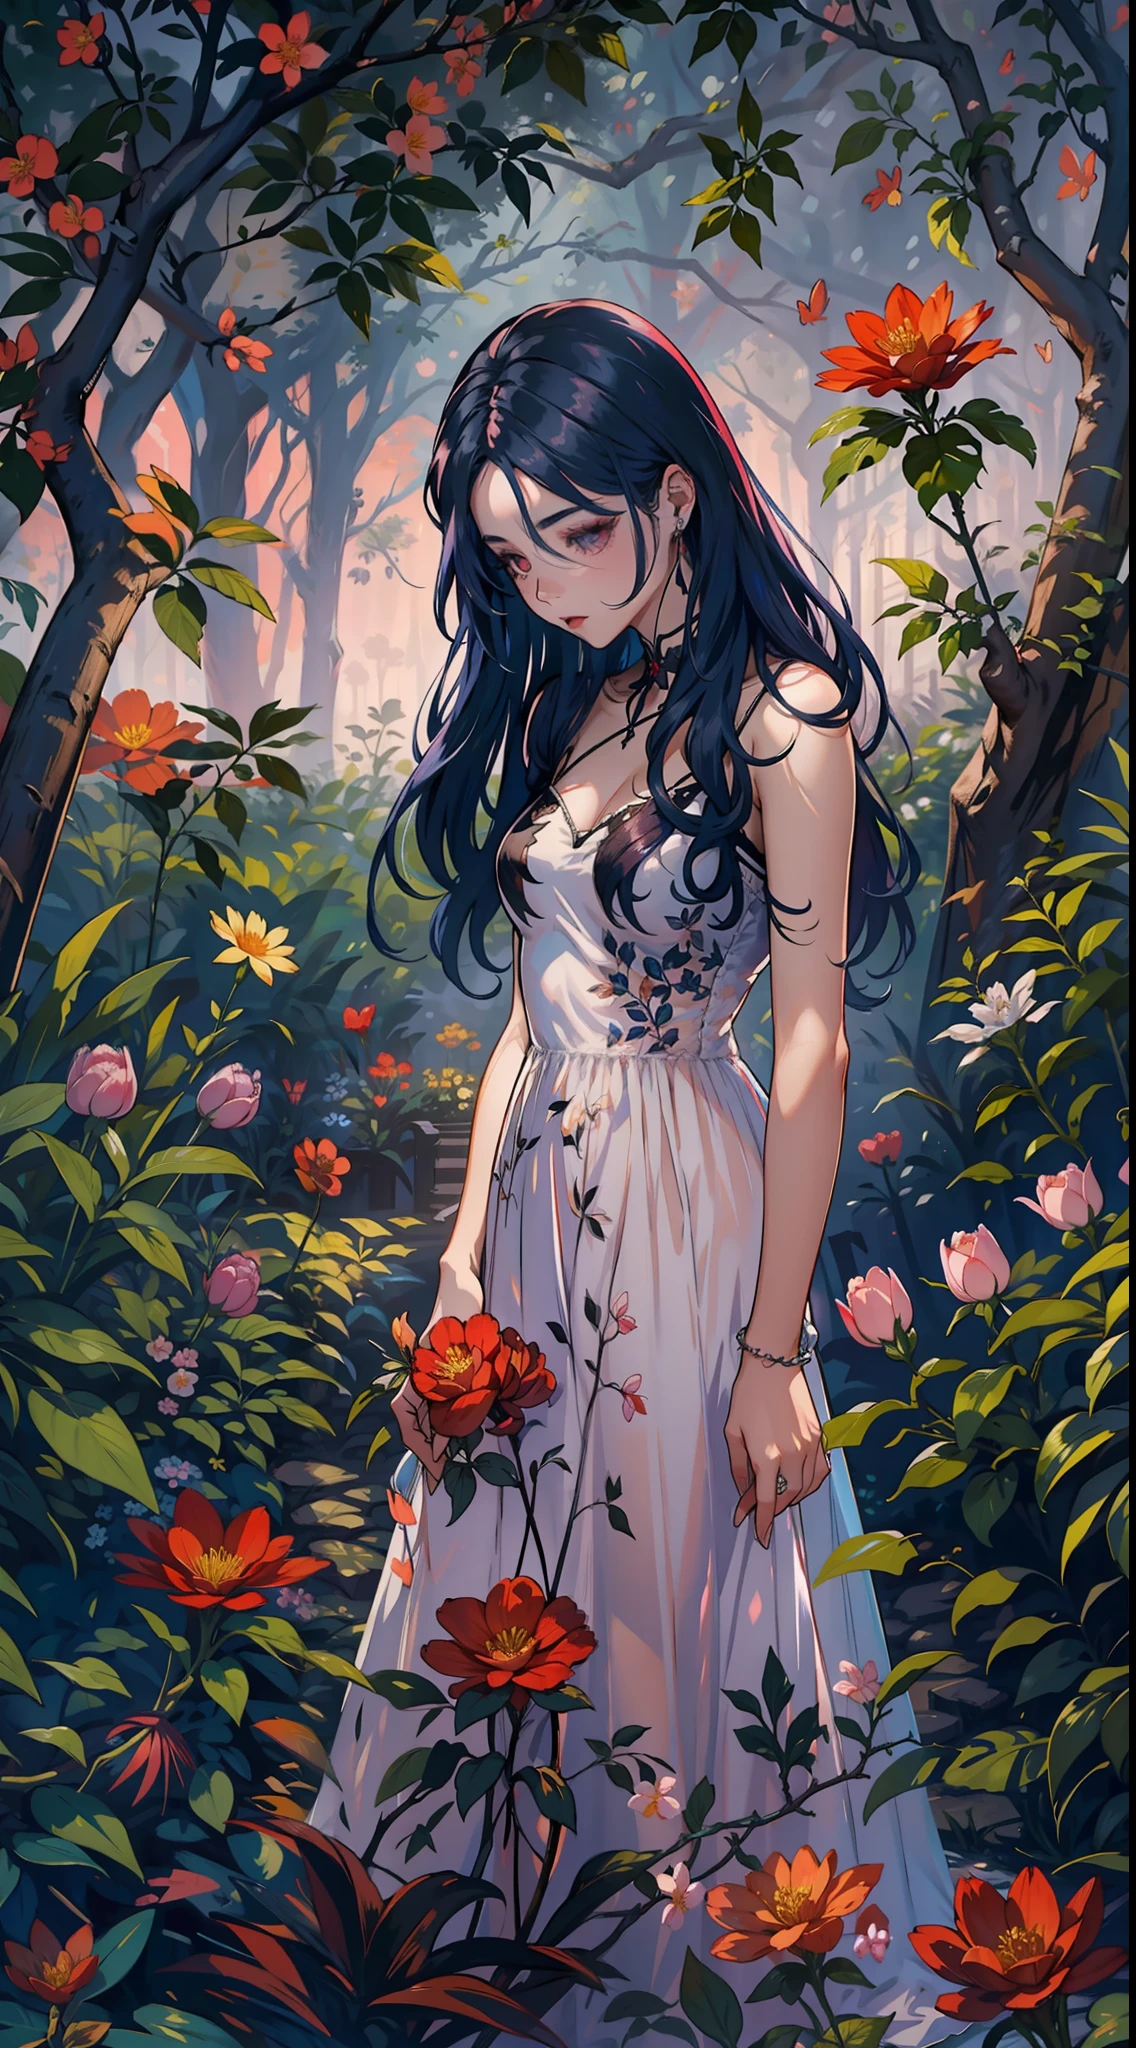 봄 파티에서, 아름다운 뱀파이어가 맑은 밤에 정원을 걷는다. 그녀는 머리에 꽃 화환을 쓰고 있습니다., 눈이 차갑고 피부에 색소가 부족합니다., 그녀는 긴 옷을 입는다., 하트 네크라인이 있는 수수한 드레스.